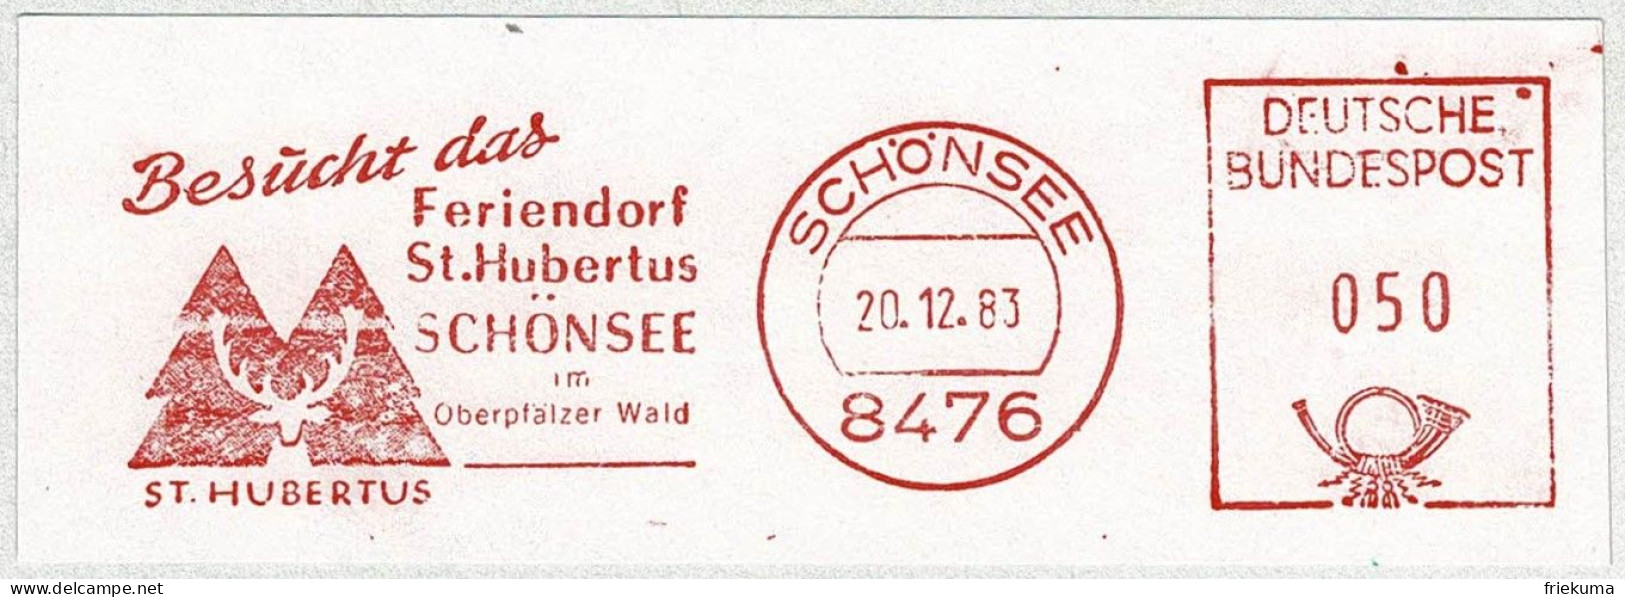 Deutsche Bundespost 1983, Freistempel / EMA / Meterstamp Schönsee, Feriendorf St. Hubertus, Jagd - Hôtellerie - Horeca